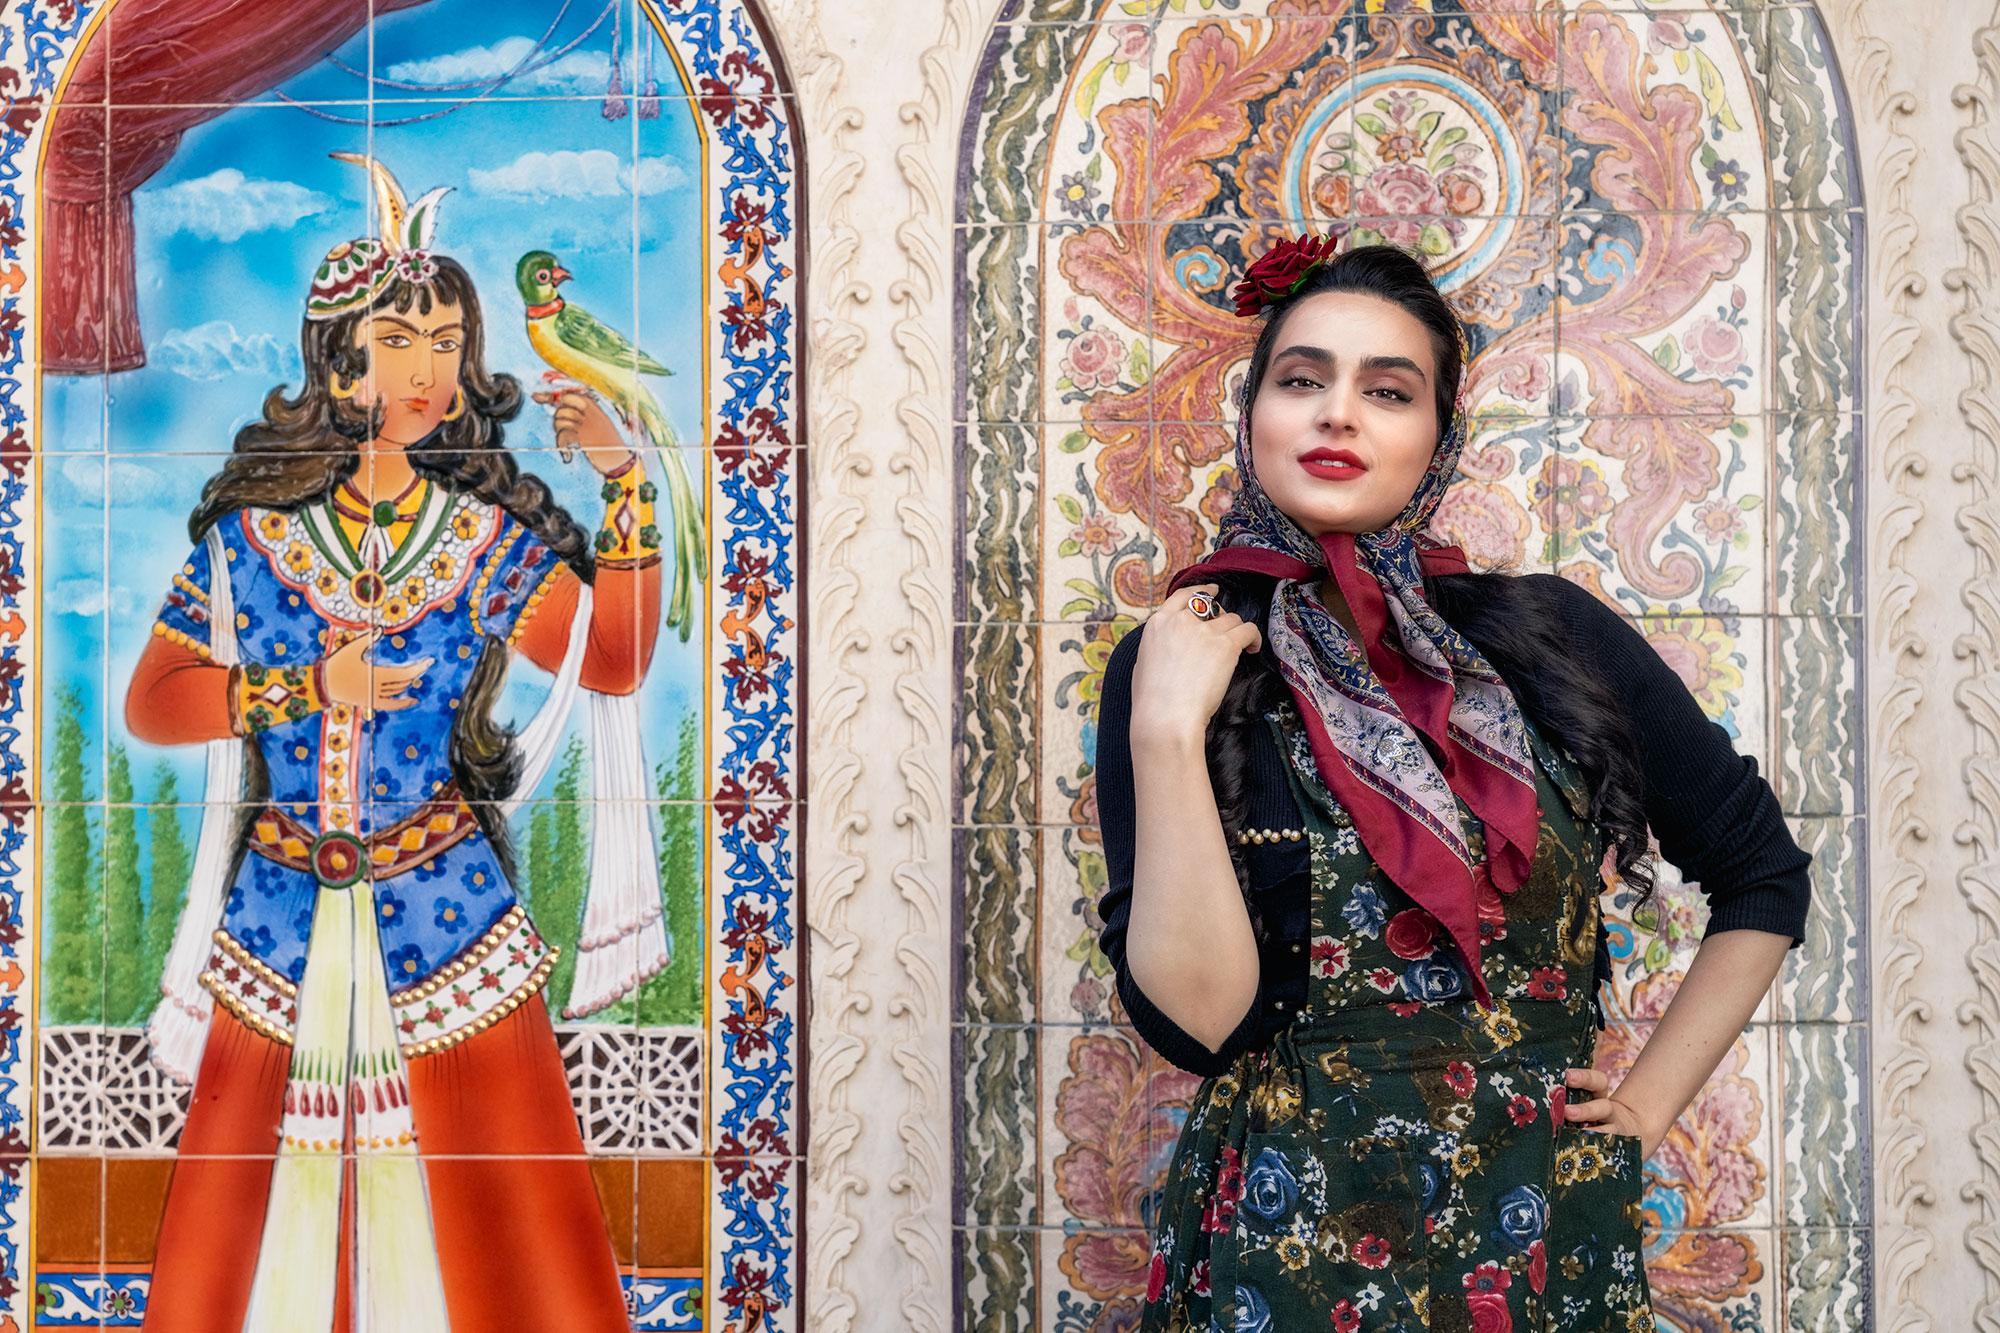 Fotomodelle in Isfahan fotografiert auf einer Fotoreise durch den Iran.